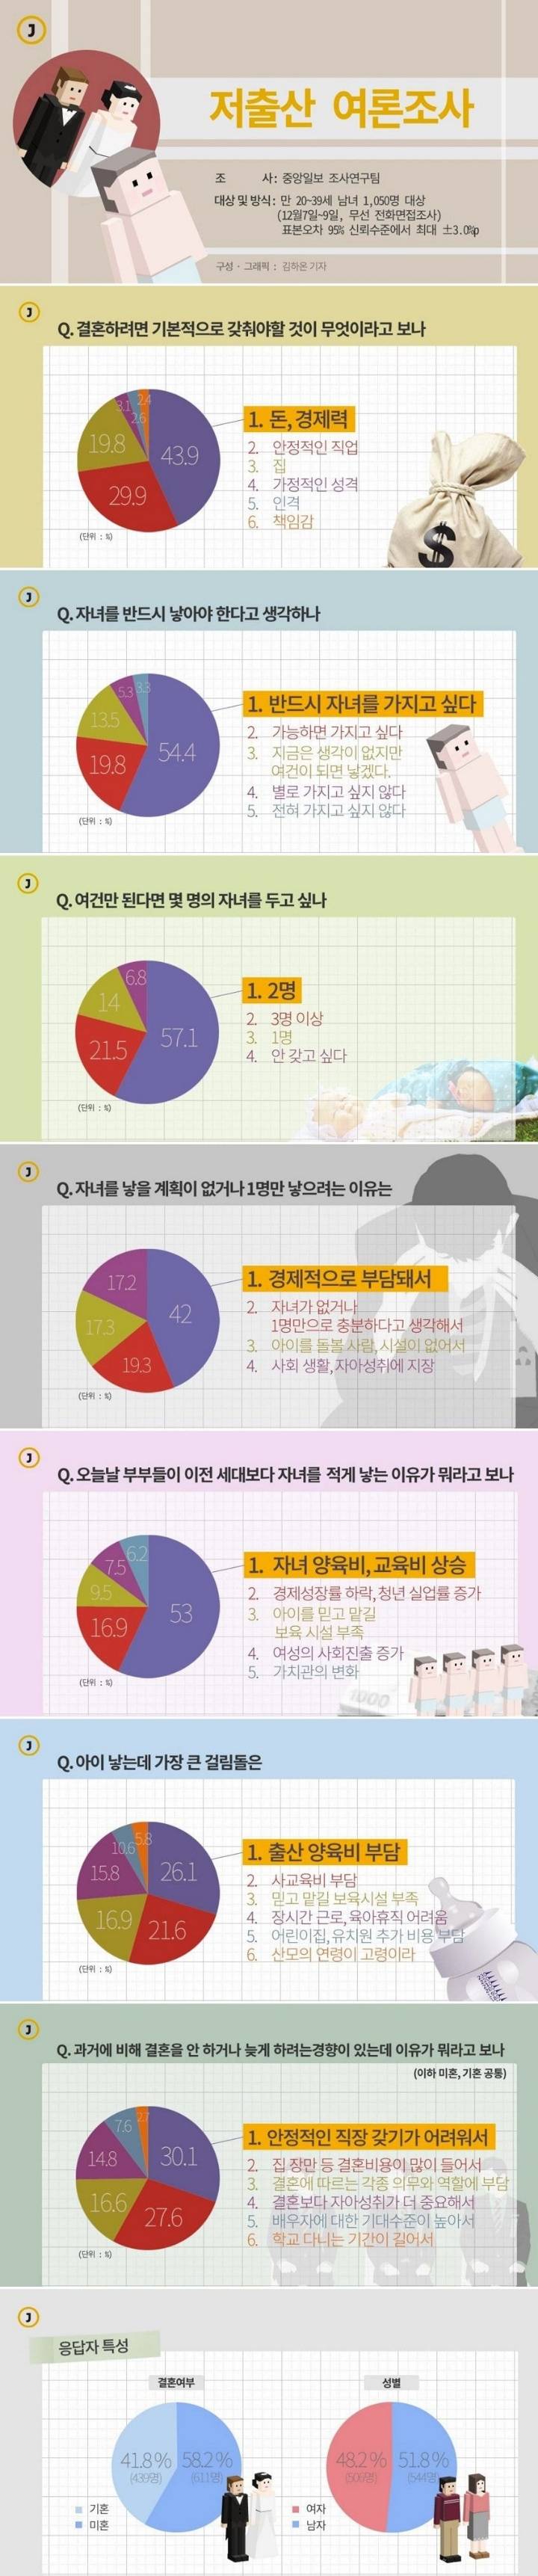 대한민국 청년 대부분은 결혼도 하고싶고, 출산도 하고 싶어함 | 인스티즈